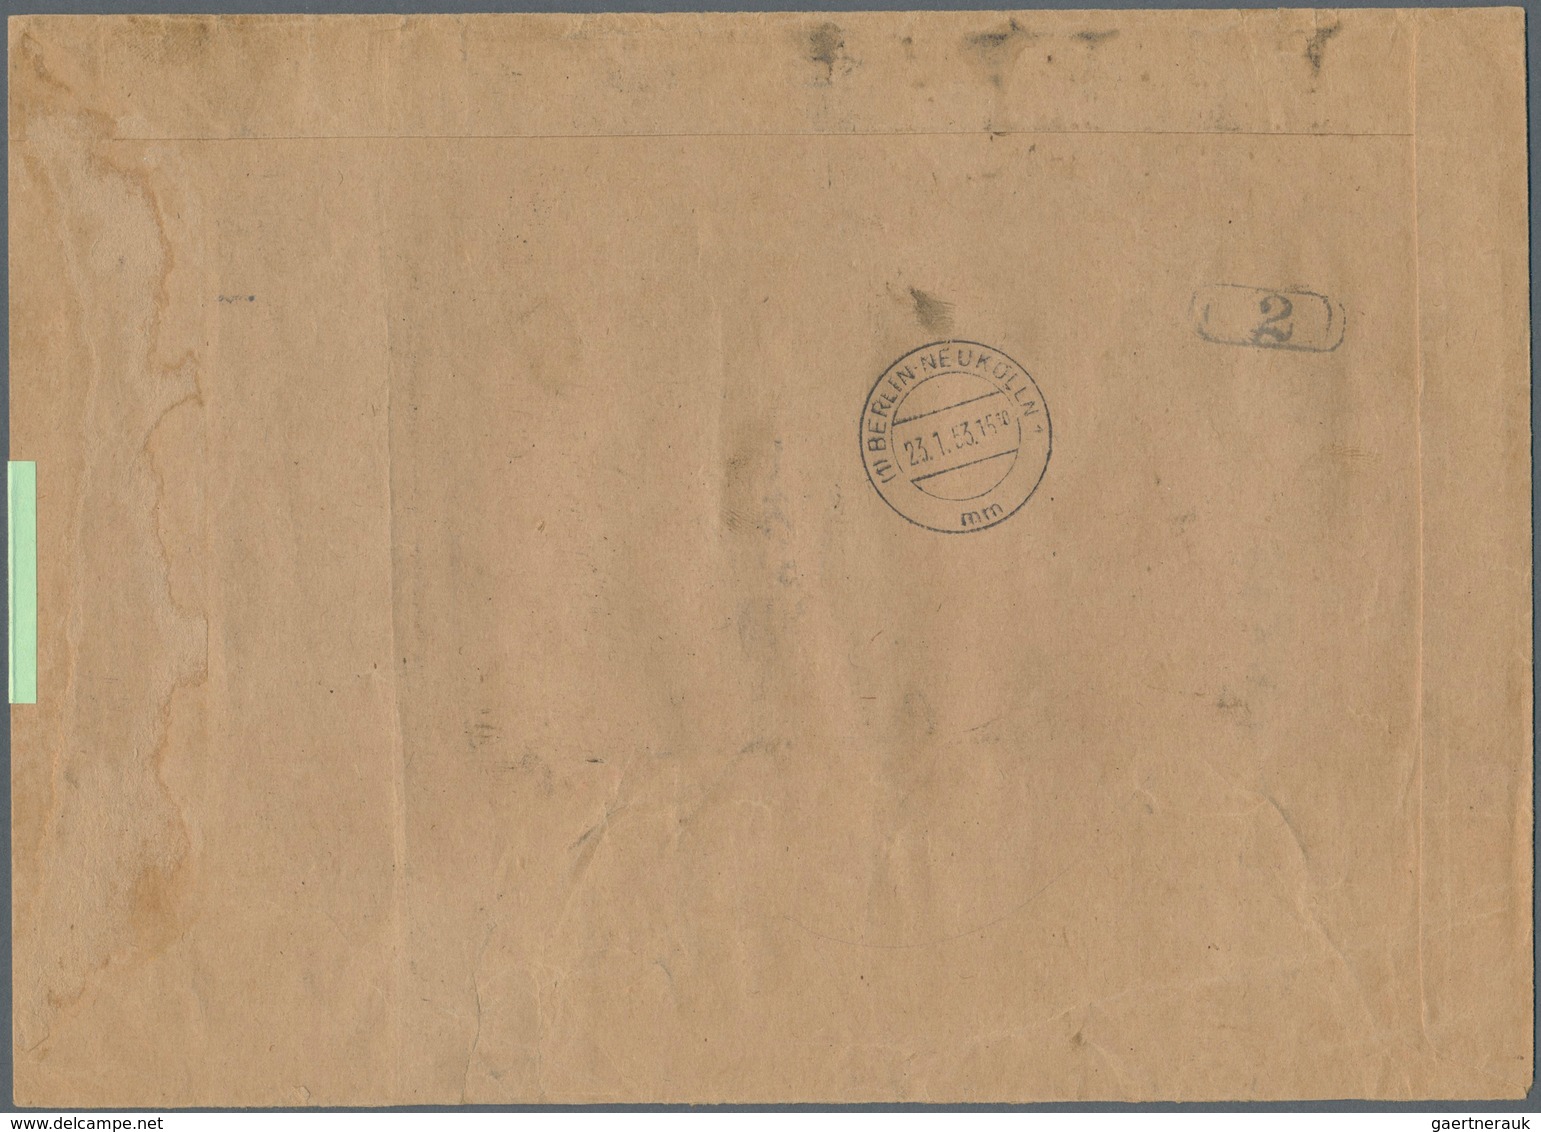 20634 Berlin - Postschnelldienst: 1953 Umschlag Ca. B5 Als Postsache, Gebührenfrei, Absender Postamt Berli - Covers & Documents